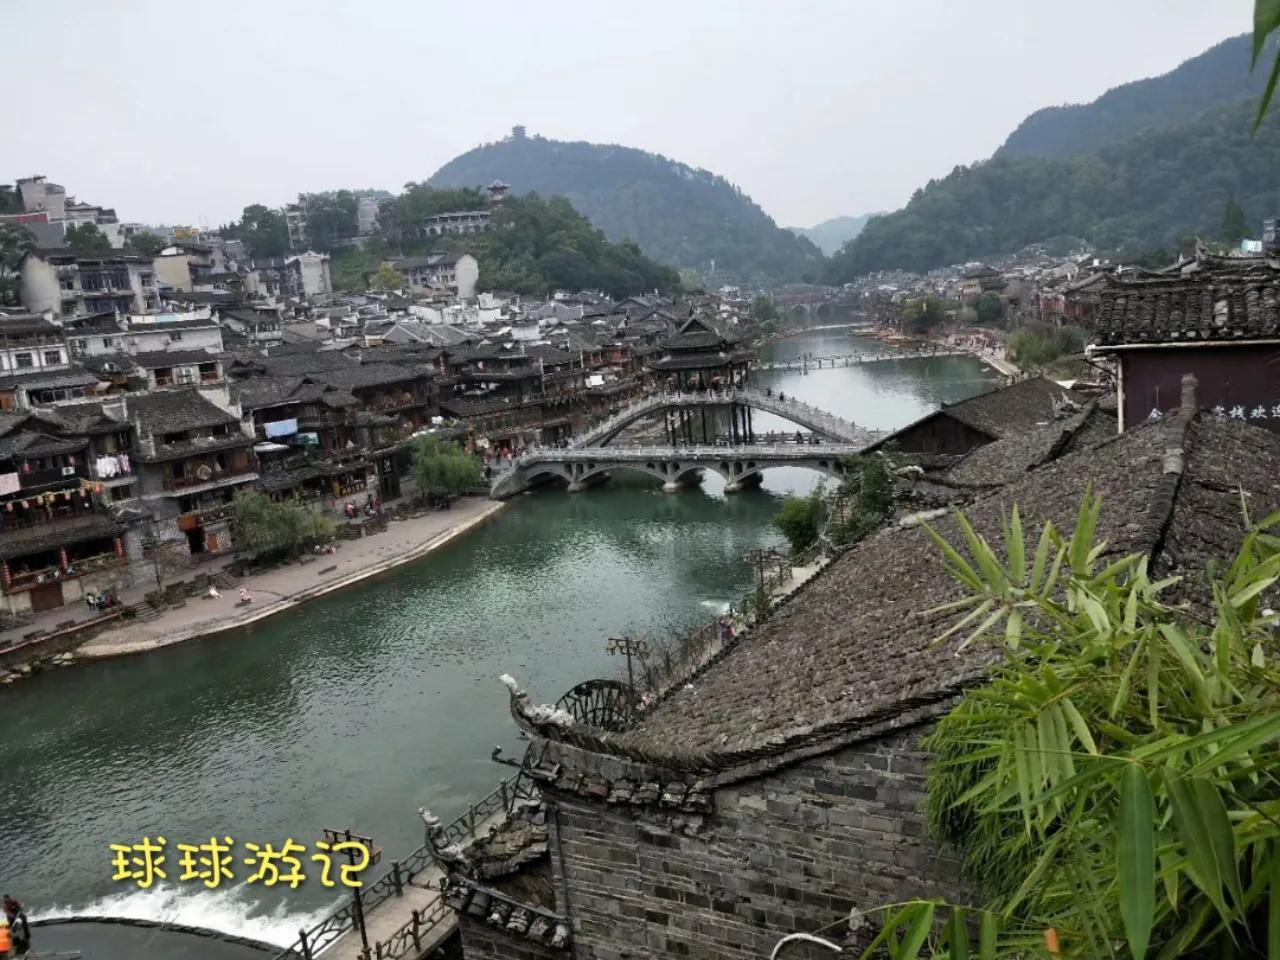 号称“中国最美古镇”的湖南湘西凤凰古城，虽美但不想再去第二次